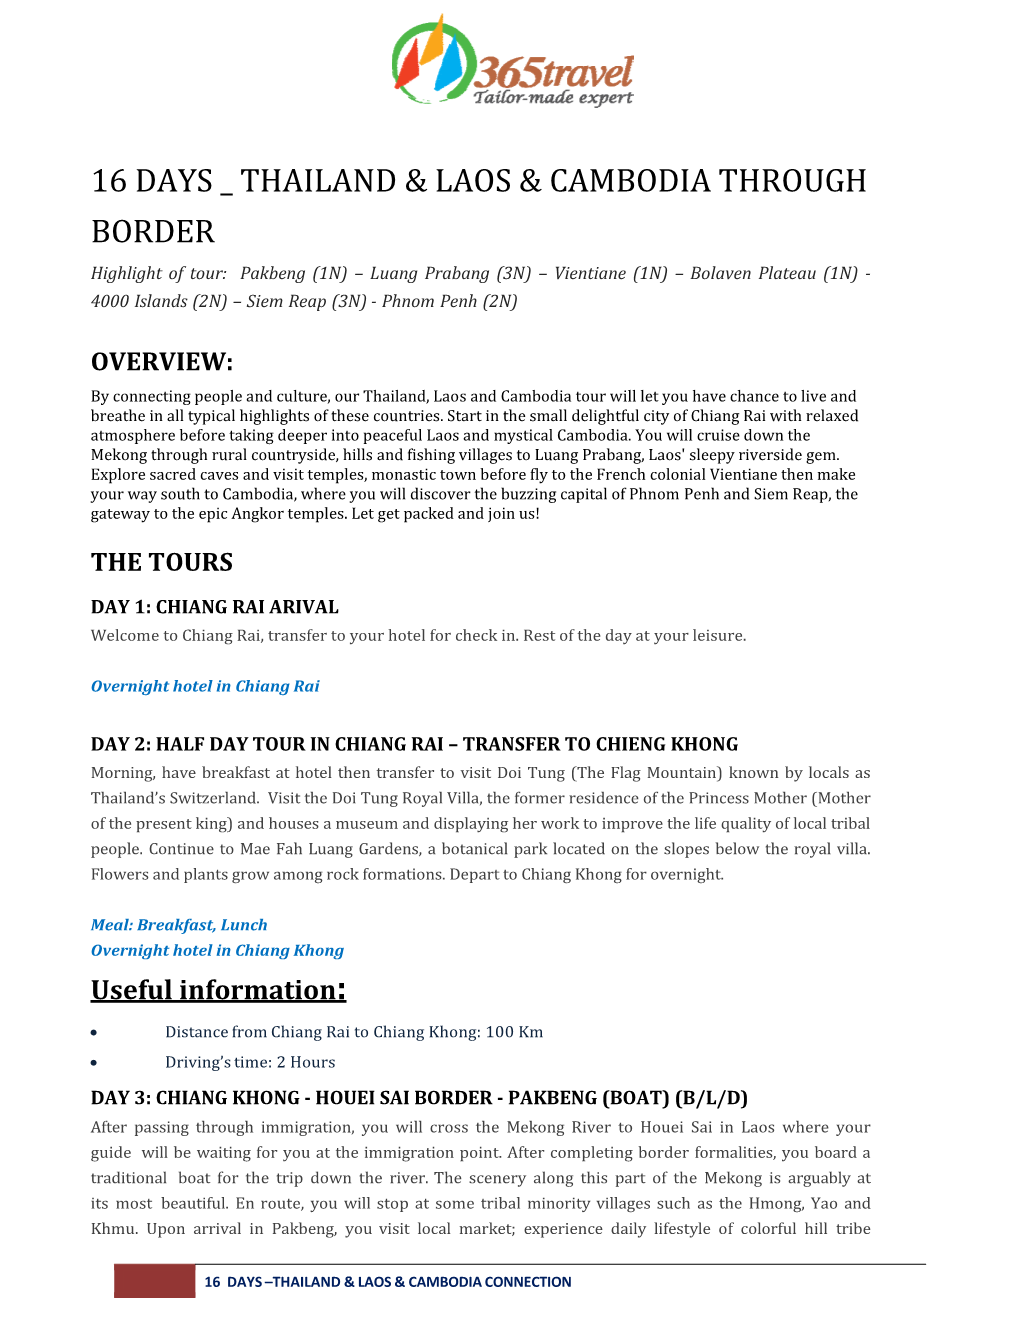 Thailand & Laos & Cambodia Through Border